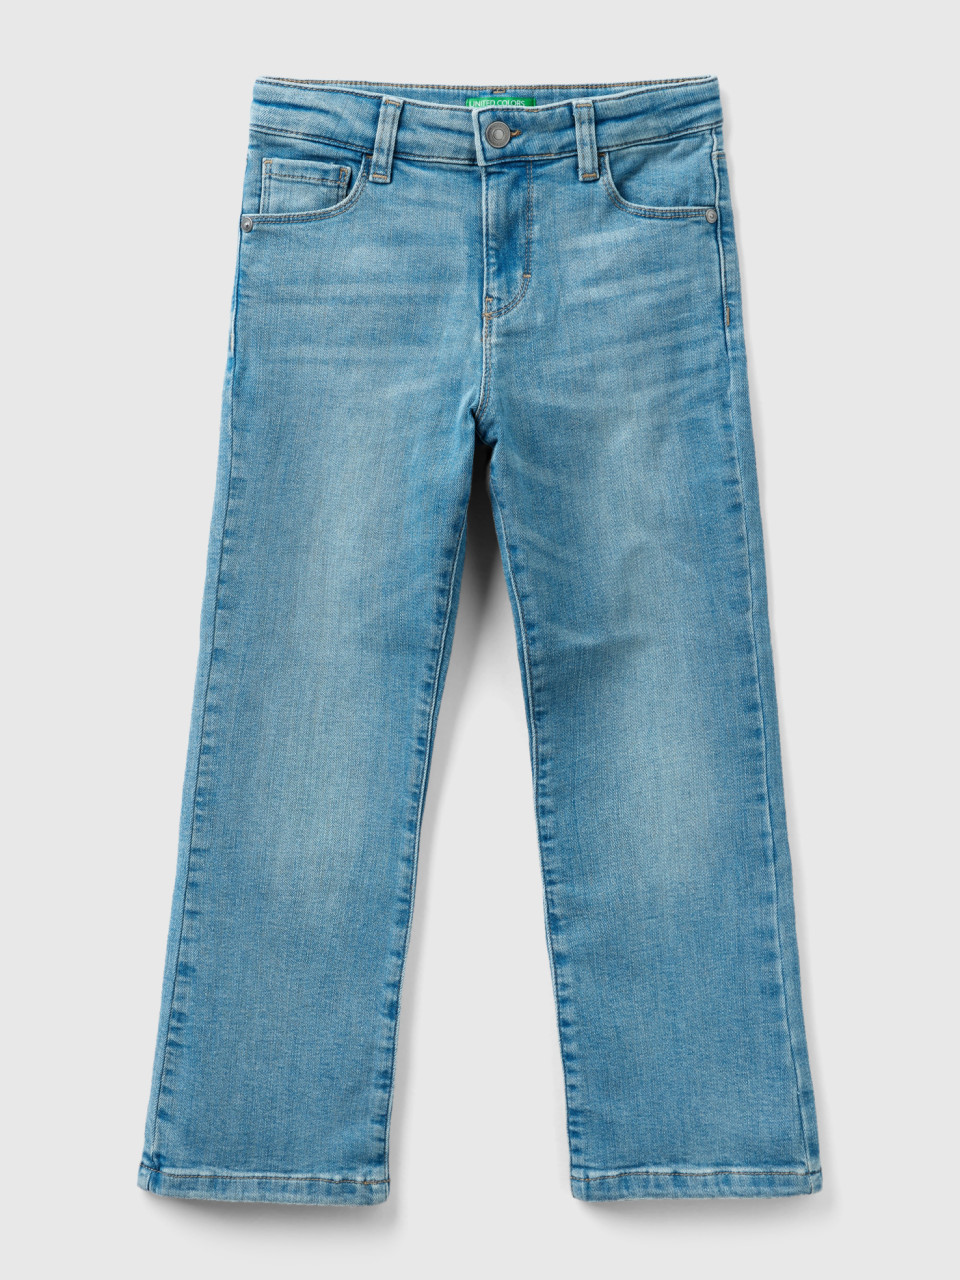 Benetton, Five-pocket-jeans Mit Schlag, Azurblau, female